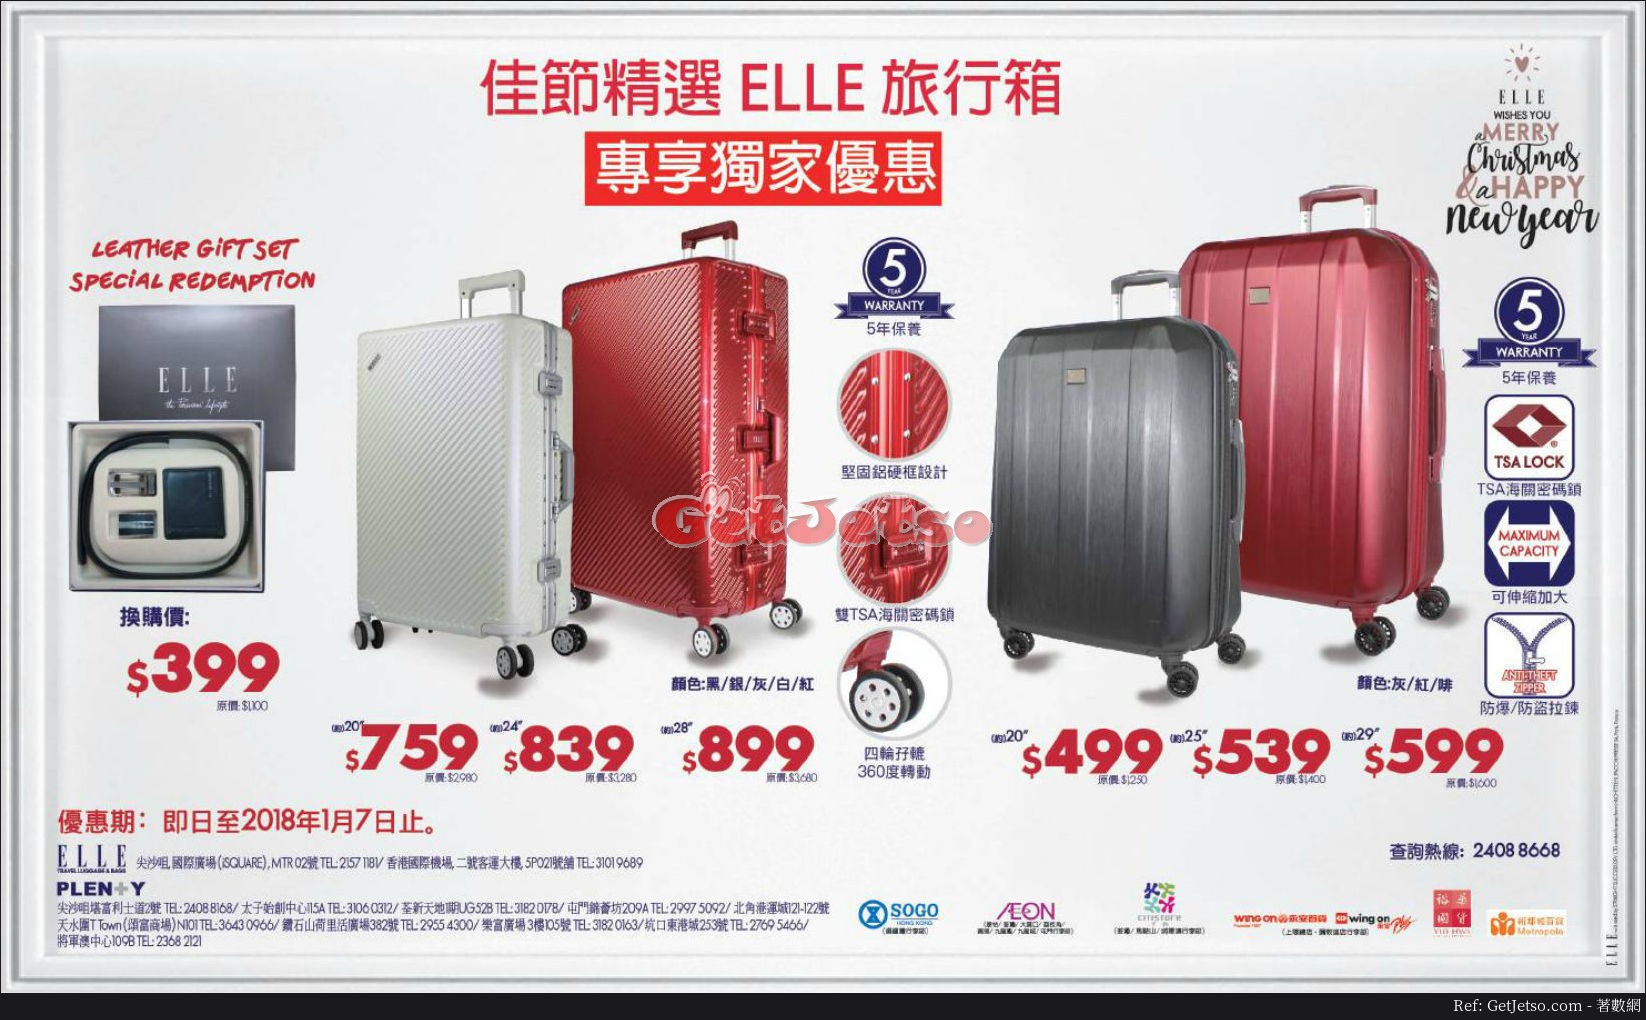 ELLE 行李箱低至3折聖誕優惠(至18年1月7日)圖片1